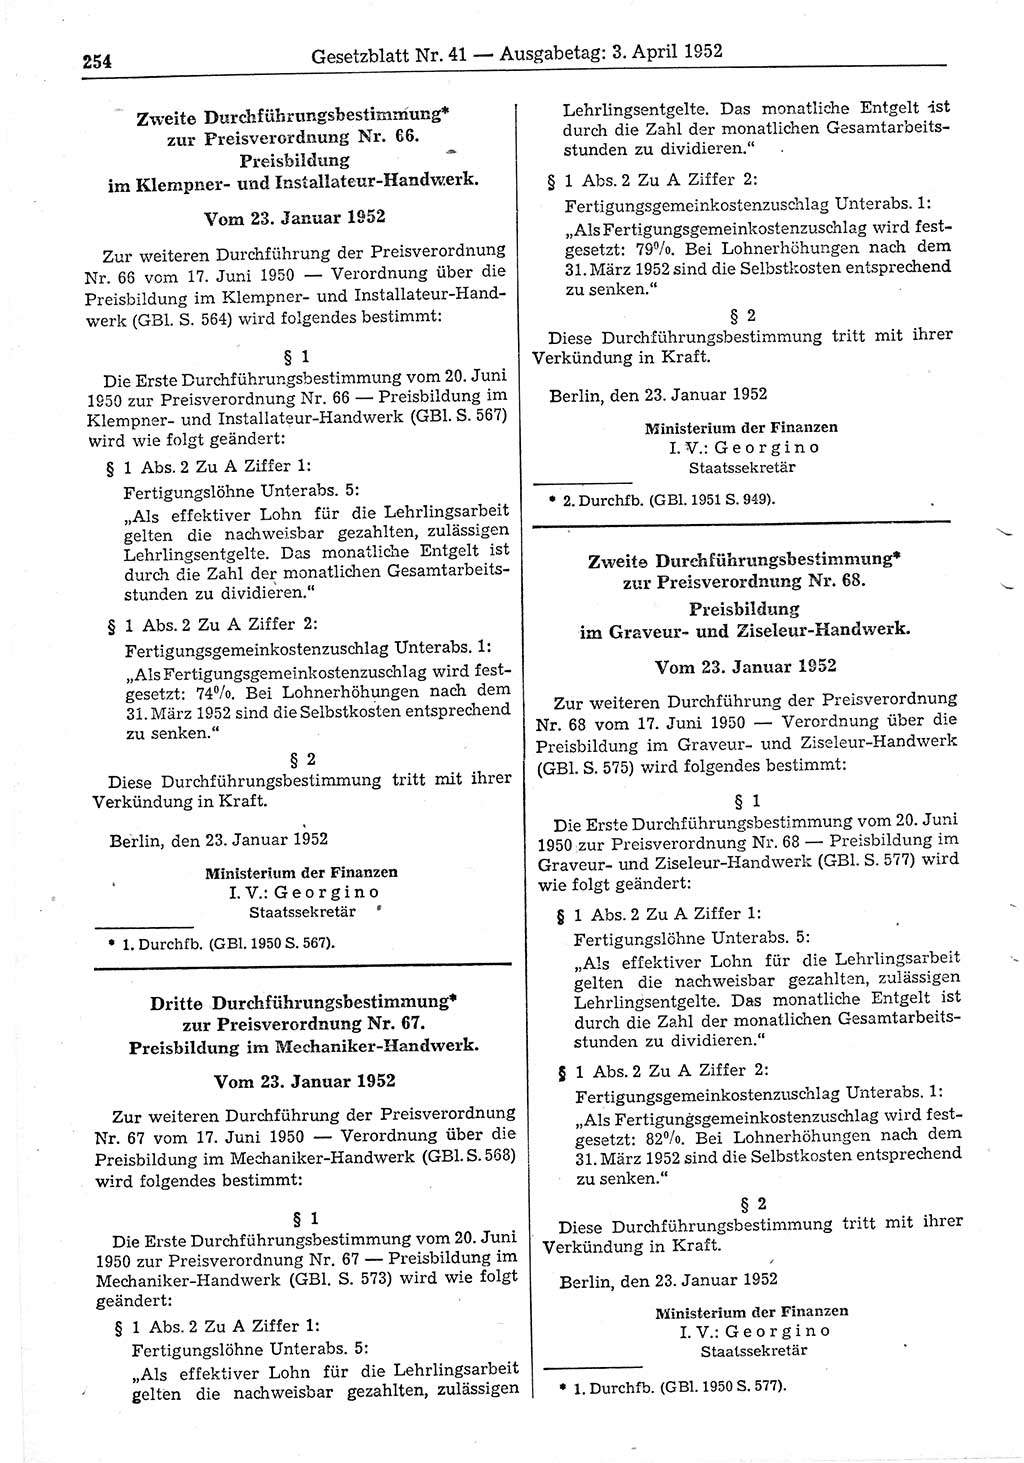 Gesetzblatt (GBl.) der Deutschen Demokratischen Republik (DDR) 1952, Seite 254 (GBl. DDR 1952, S. 254)